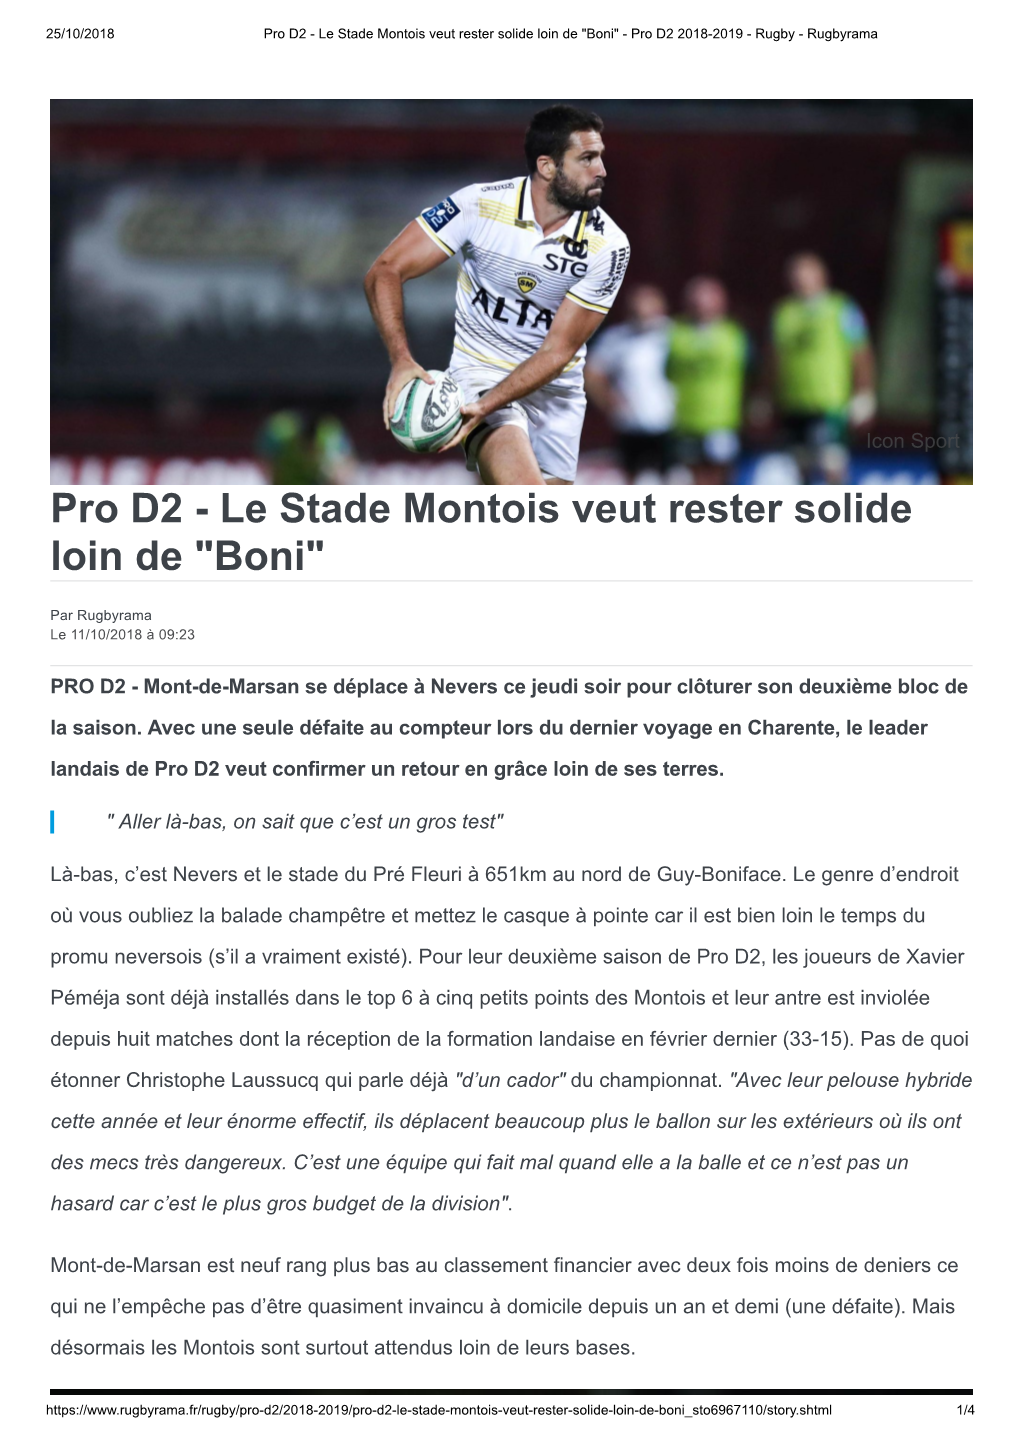 Pro D2 - Le Stade Montois Veut Rester Solide Loin De "Boni" - Pro D2 2018-2019 - Rugby - Rugbyrama